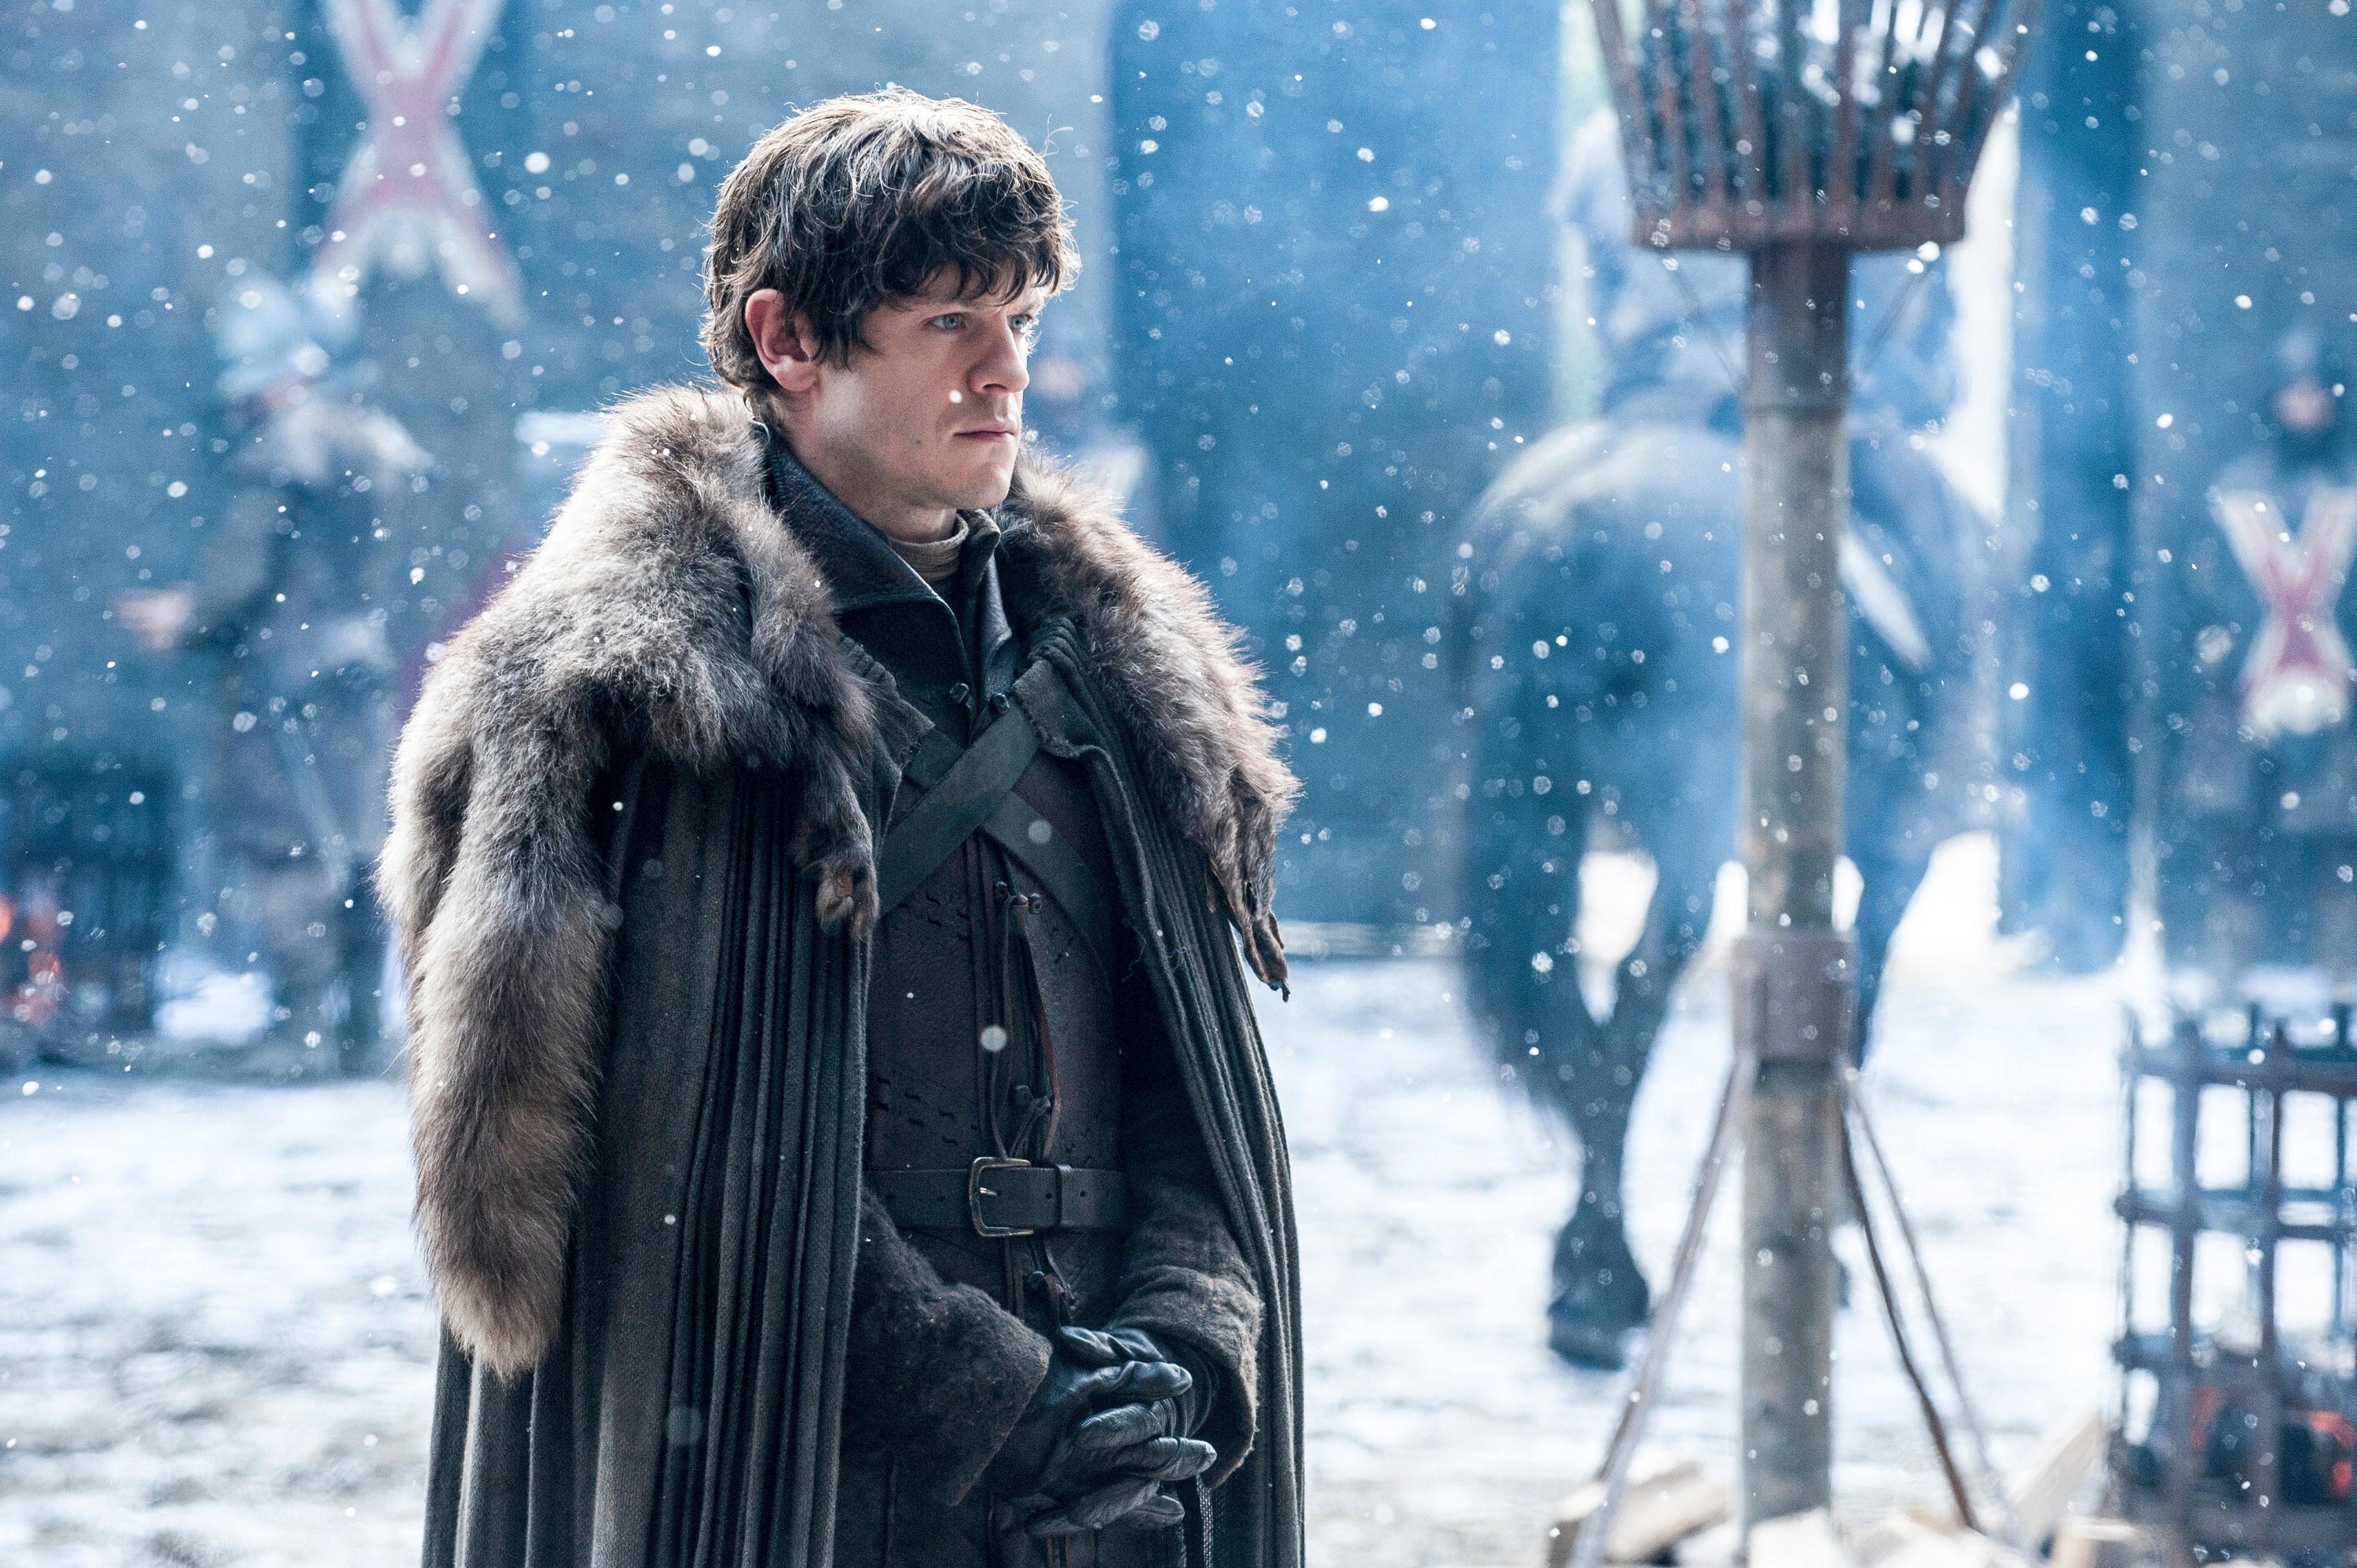 Iwan Rheon as Ramsey in a snowy fortress in a heavy coat